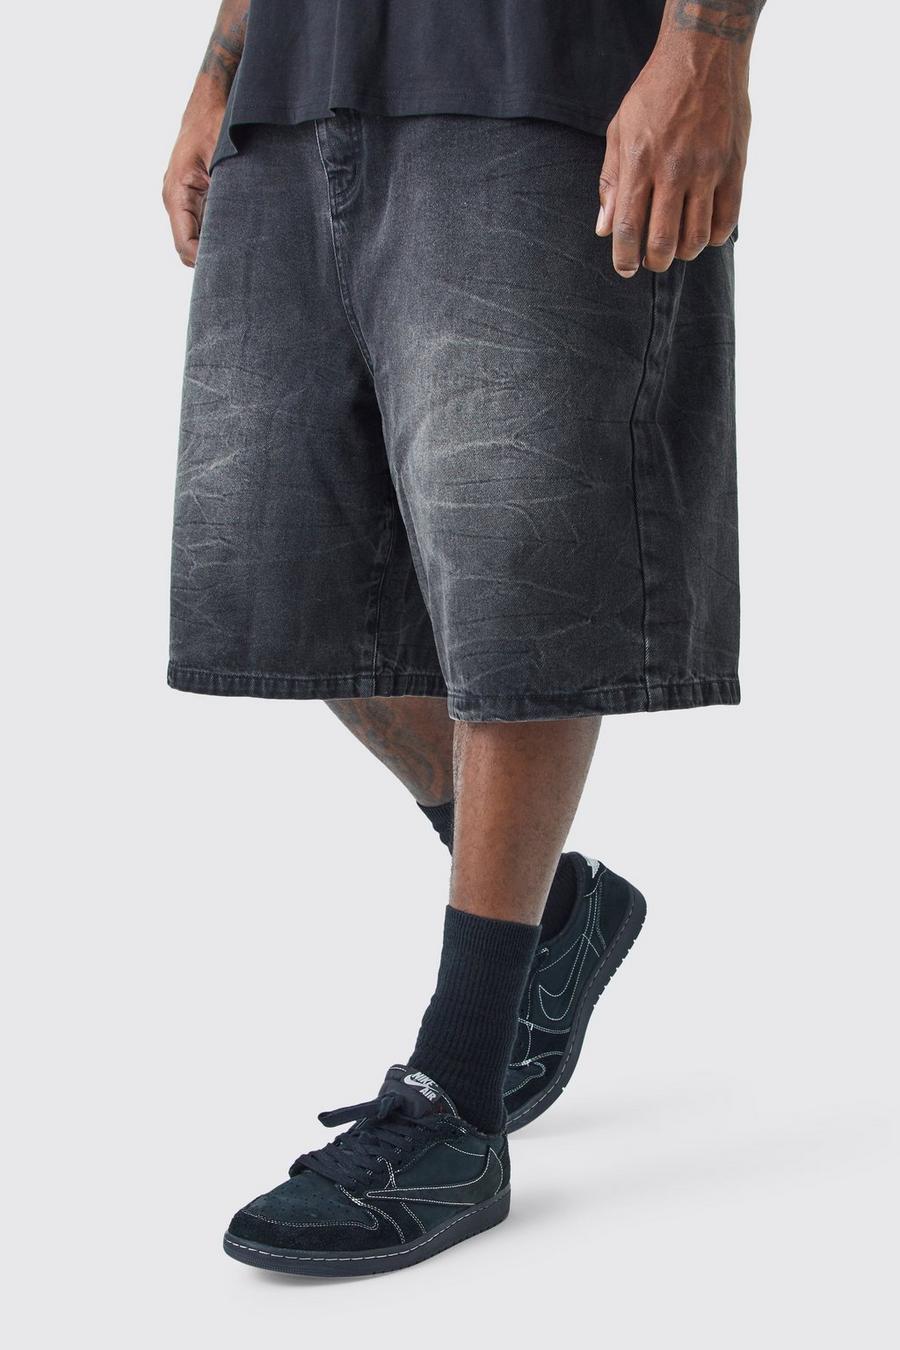 Pantaloni tuta Plus Size in denim nero slavato, Washed black image number 1